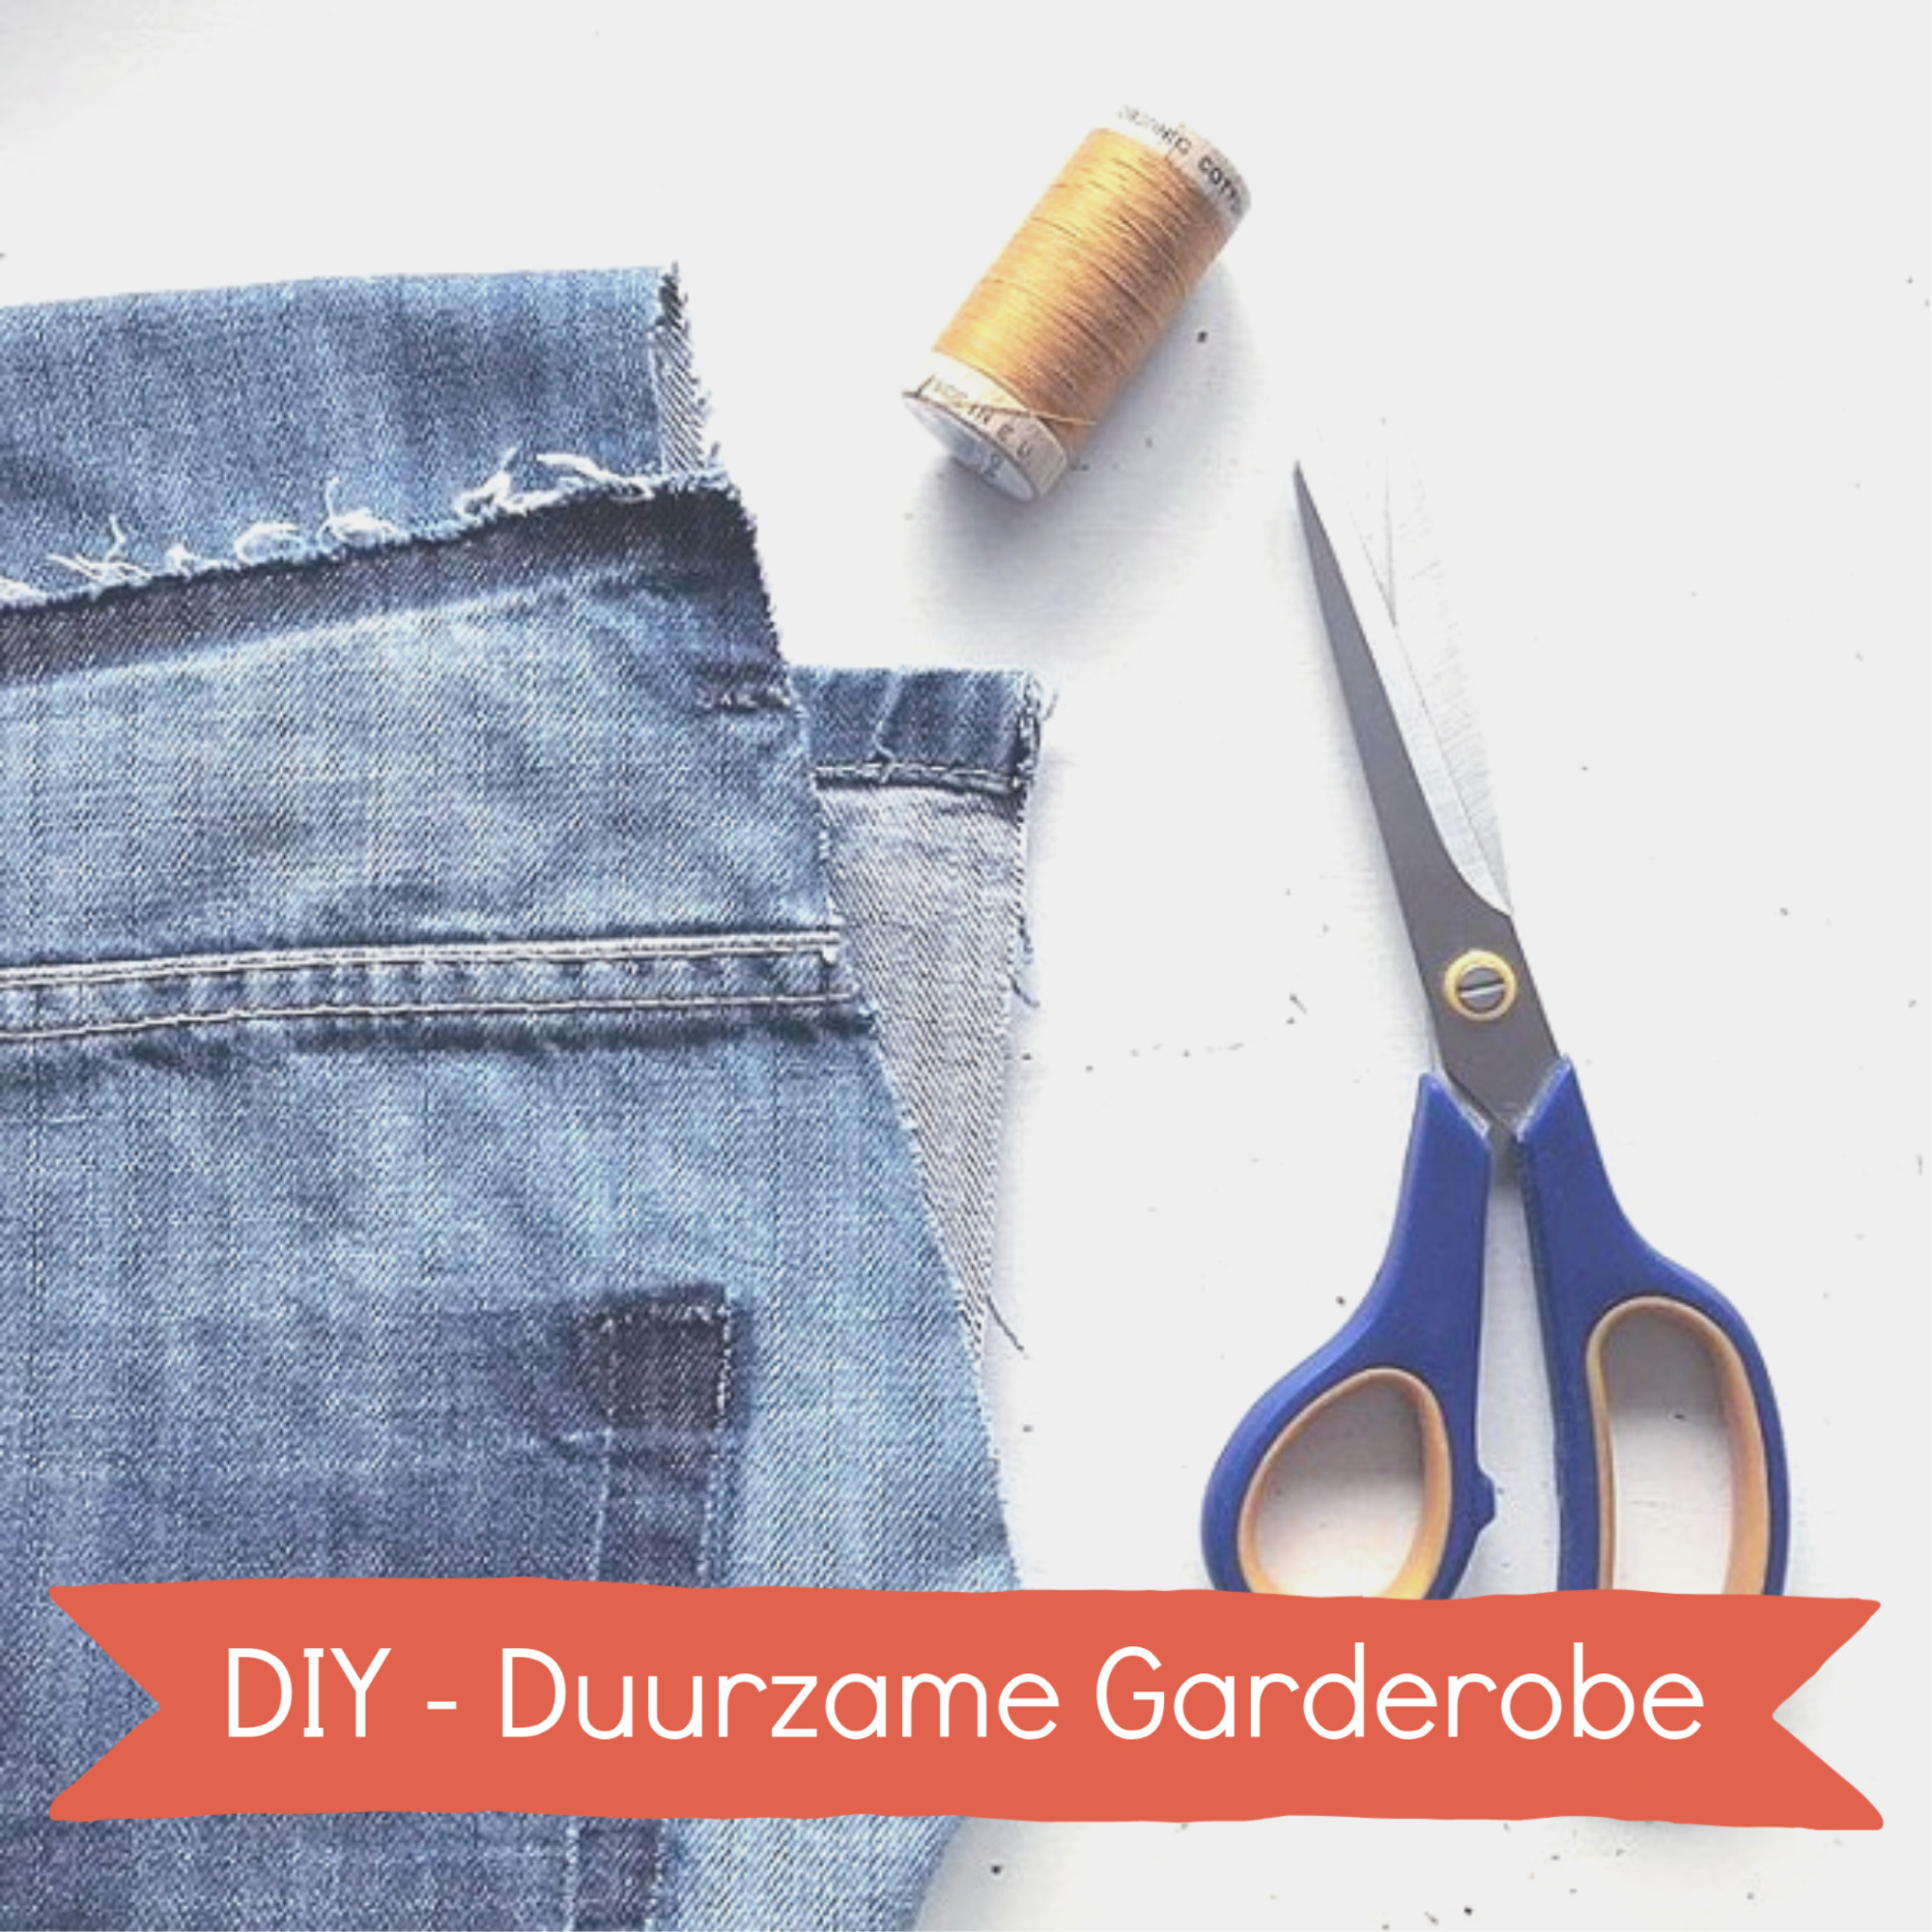 DIY Duurzame Garderobe (1)